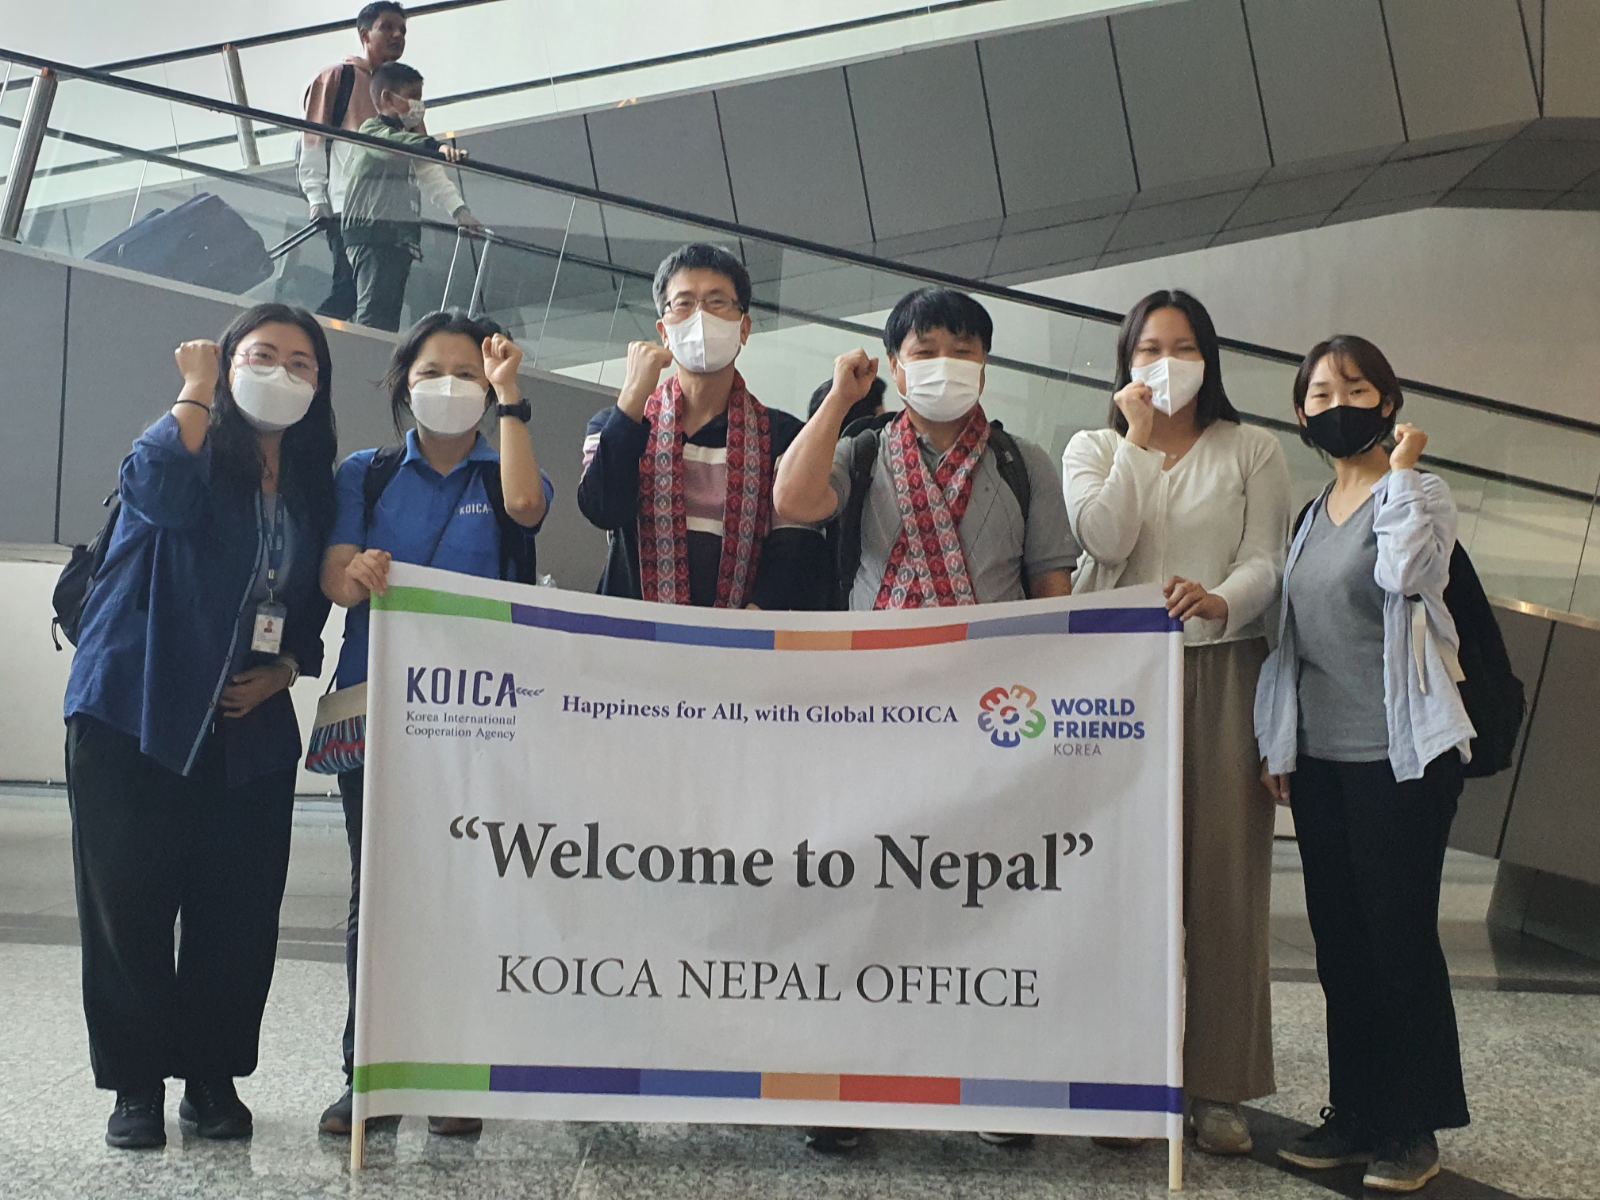 Two new Korean overseas volunteers arrive in Nepal